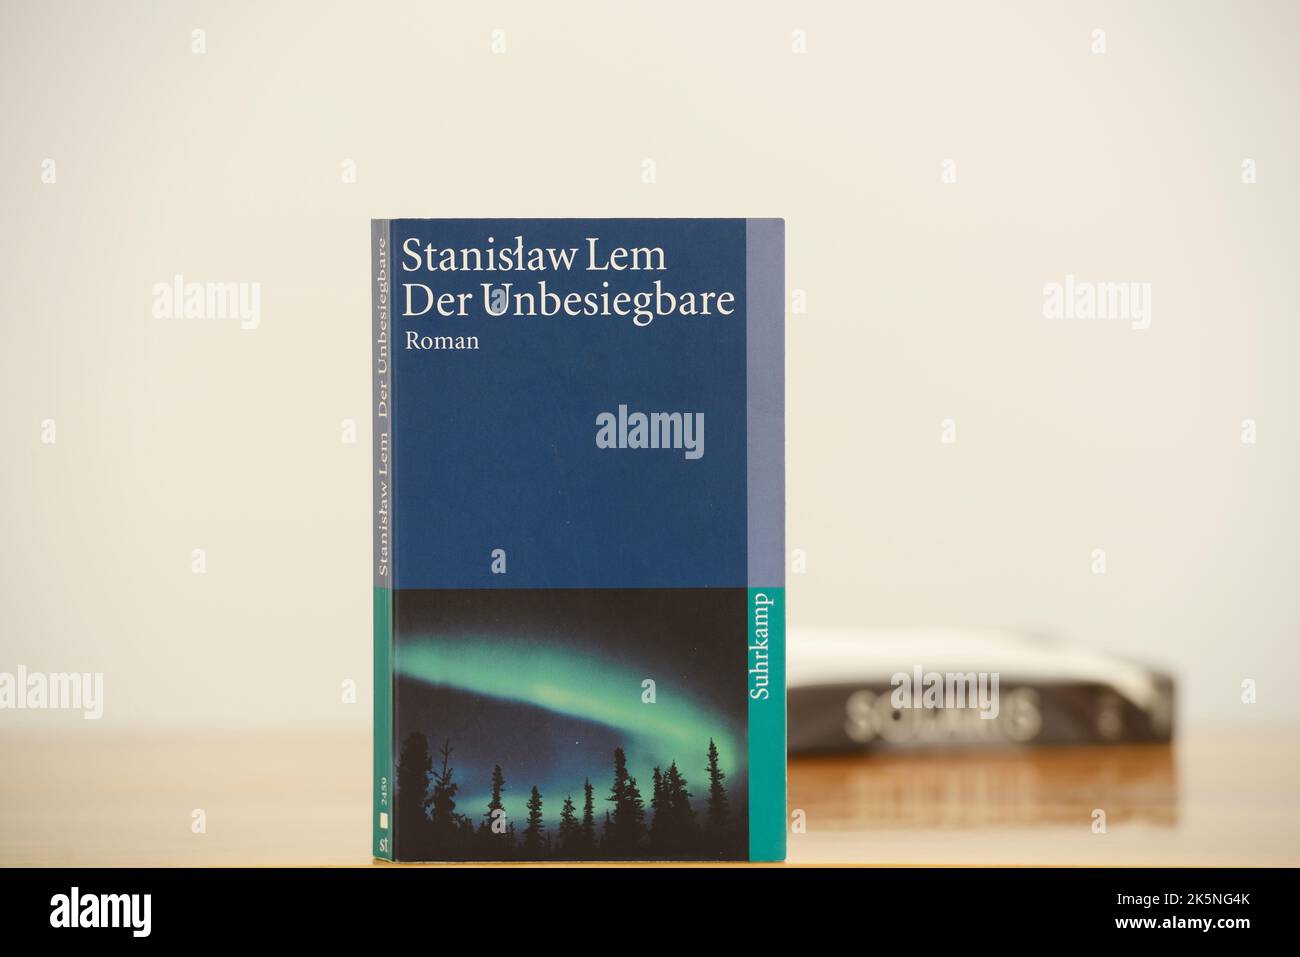 L'invincibile è un romanzo di fantascienza dello scrittore polacco Stanisław Lem. Foto Stock